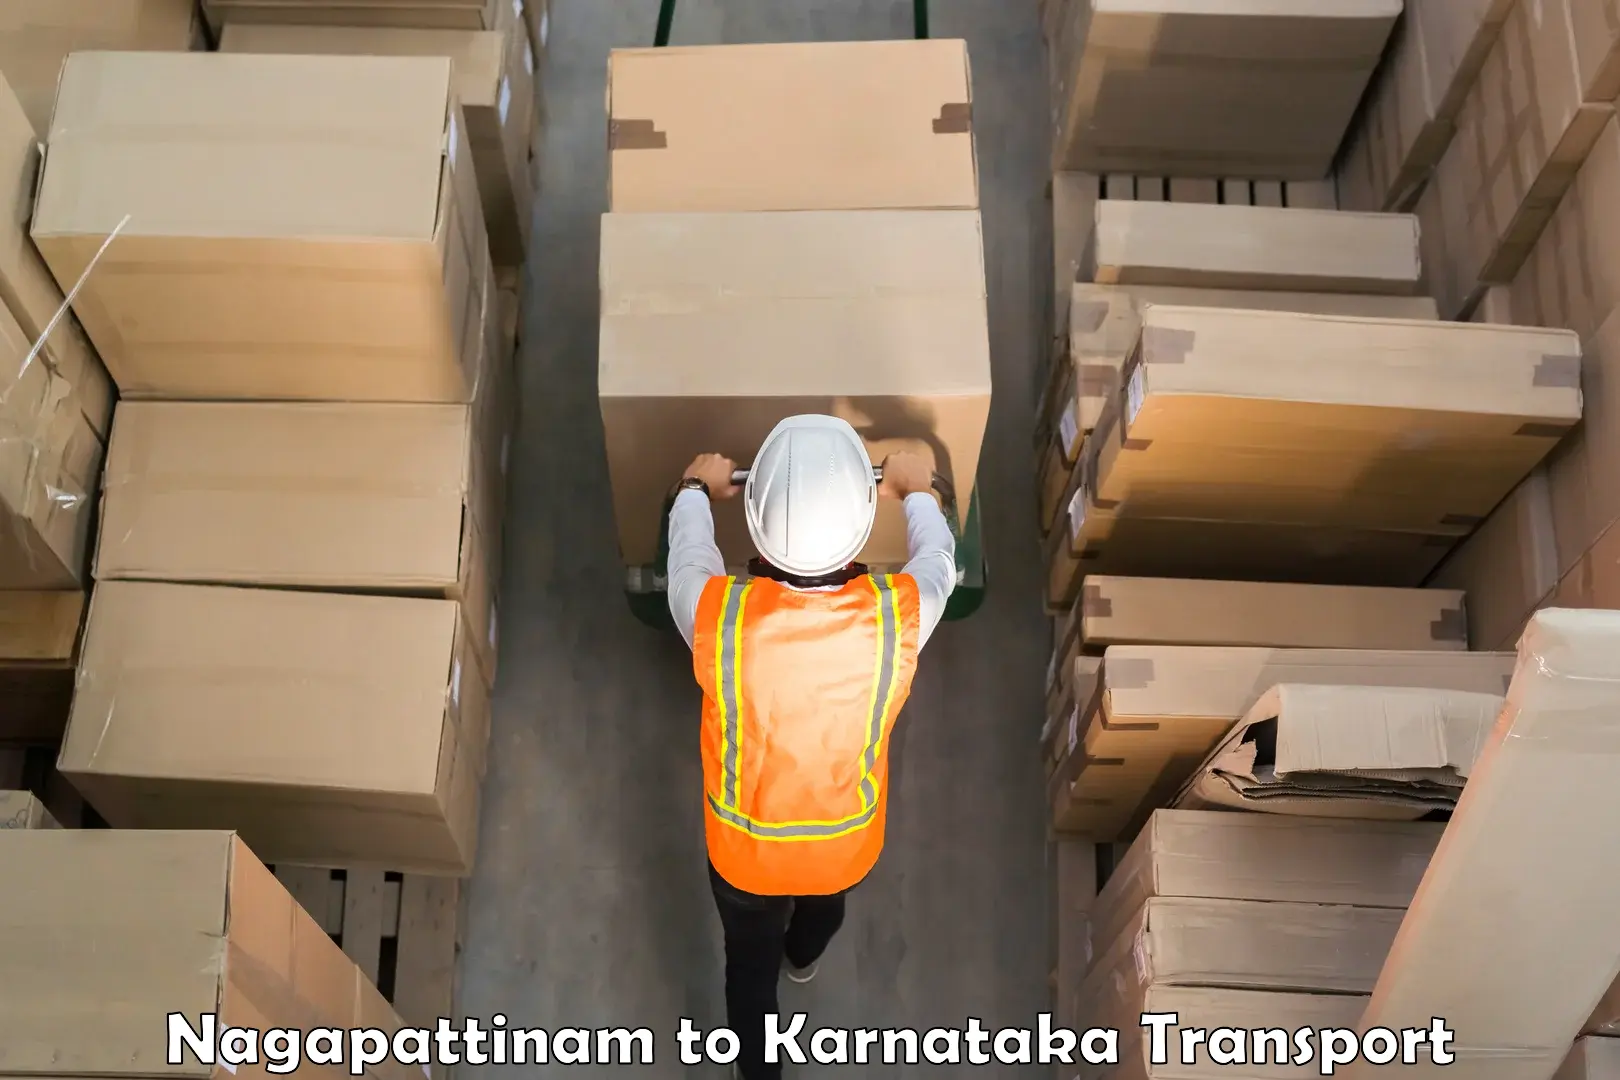 Truck transport companies in India Nagapattinam to Sullia